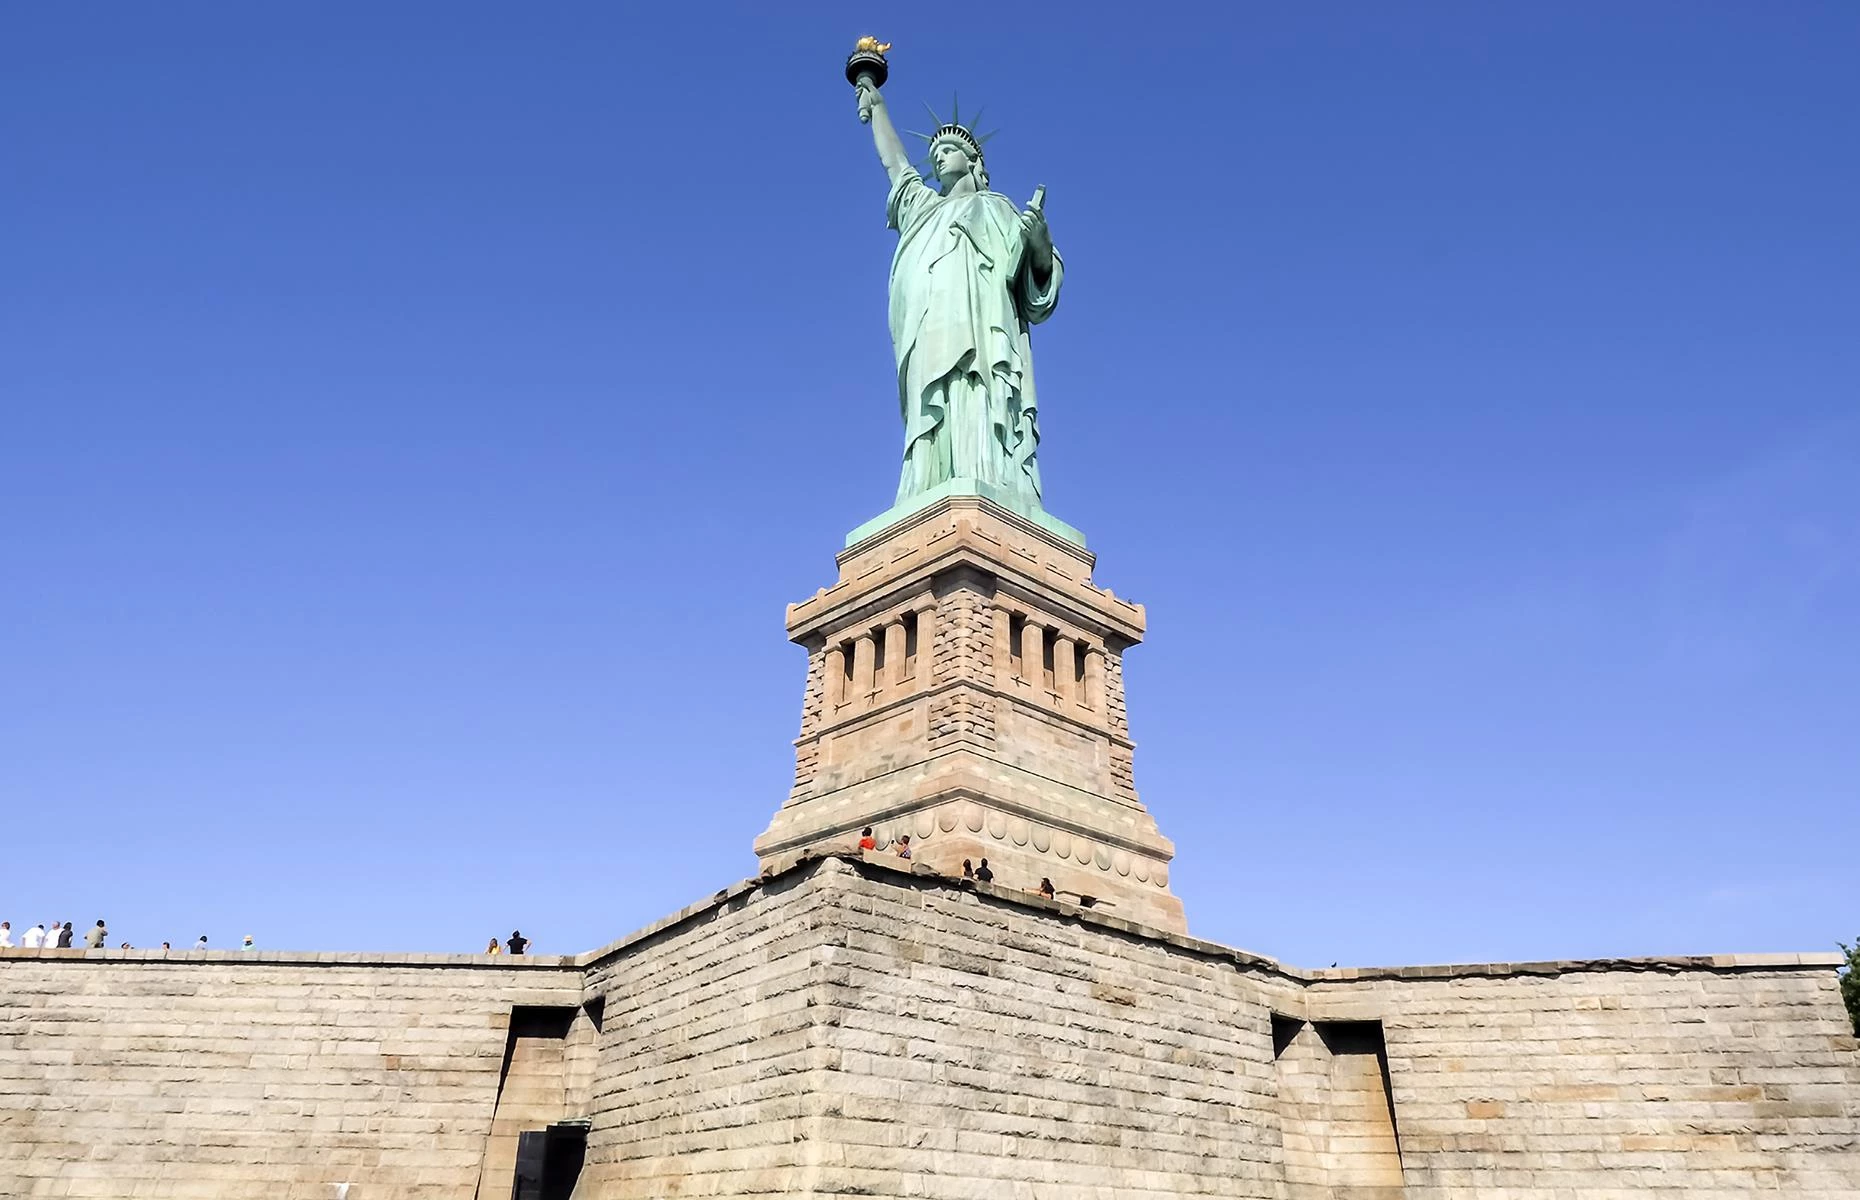 Tượng Nữ thần Tự do, New York, Mỹ: Là biểu tượng của thành phố New York, tượng Nữ thần Tự do đã chào đón du khách kể từ năm 1886. Tác phẩm là quà tặng của Pháp cho người dân Mỹ. Mặc dù bức tượng chỉ cao 47 m, công trình có phần bệ tượng cao hơn 90 m. Do đó, tượng Nữ thần Tự do cũng nằm trong top đầu những bức tượng cao nhất thế giới. Ảnh: R Scapinello.